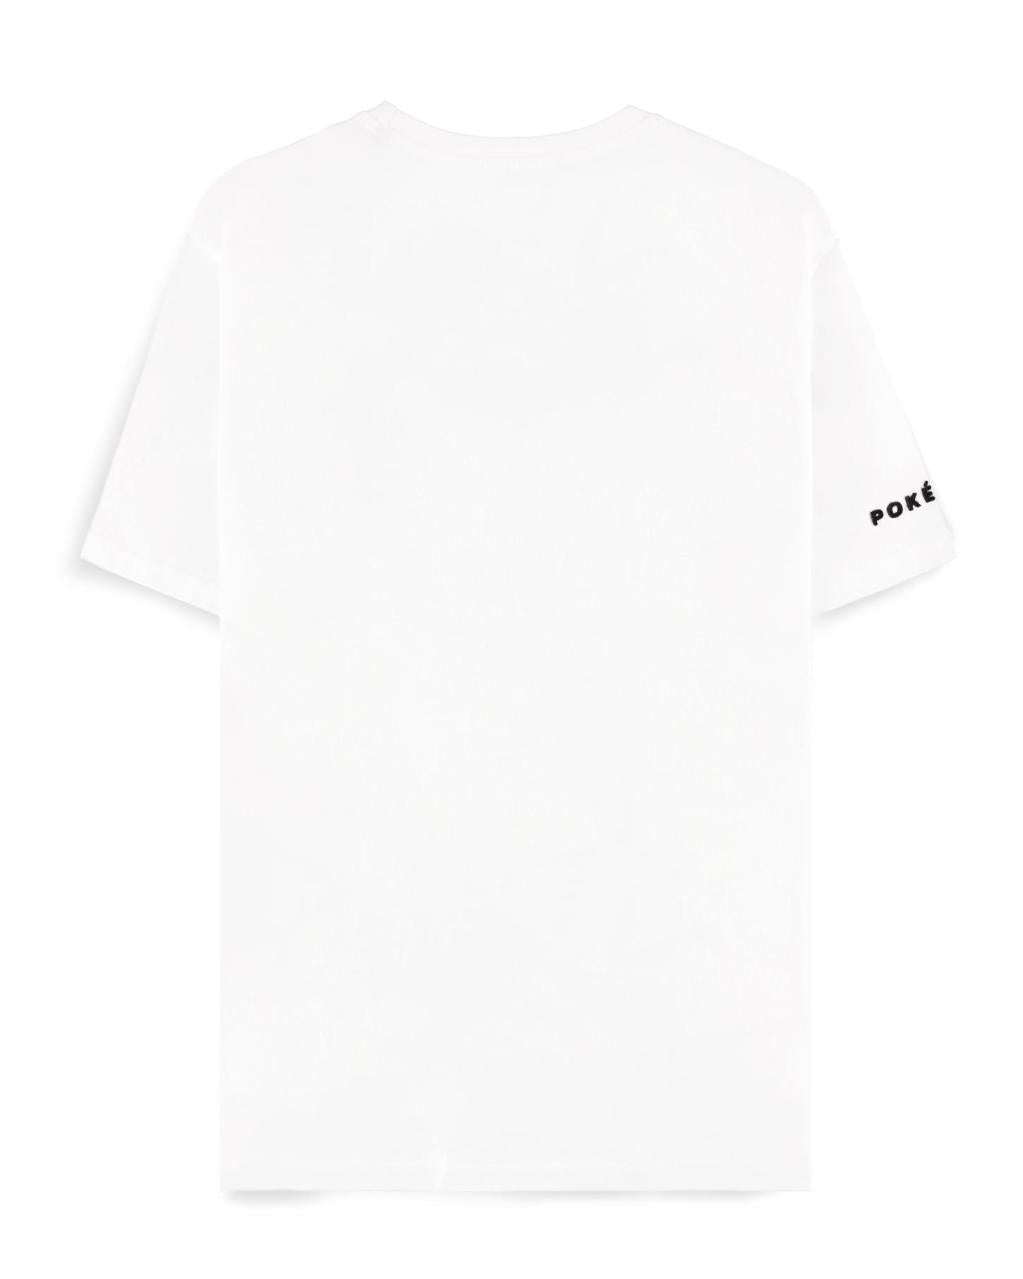 POKEMON - Ash - Men's T-shirt (S)